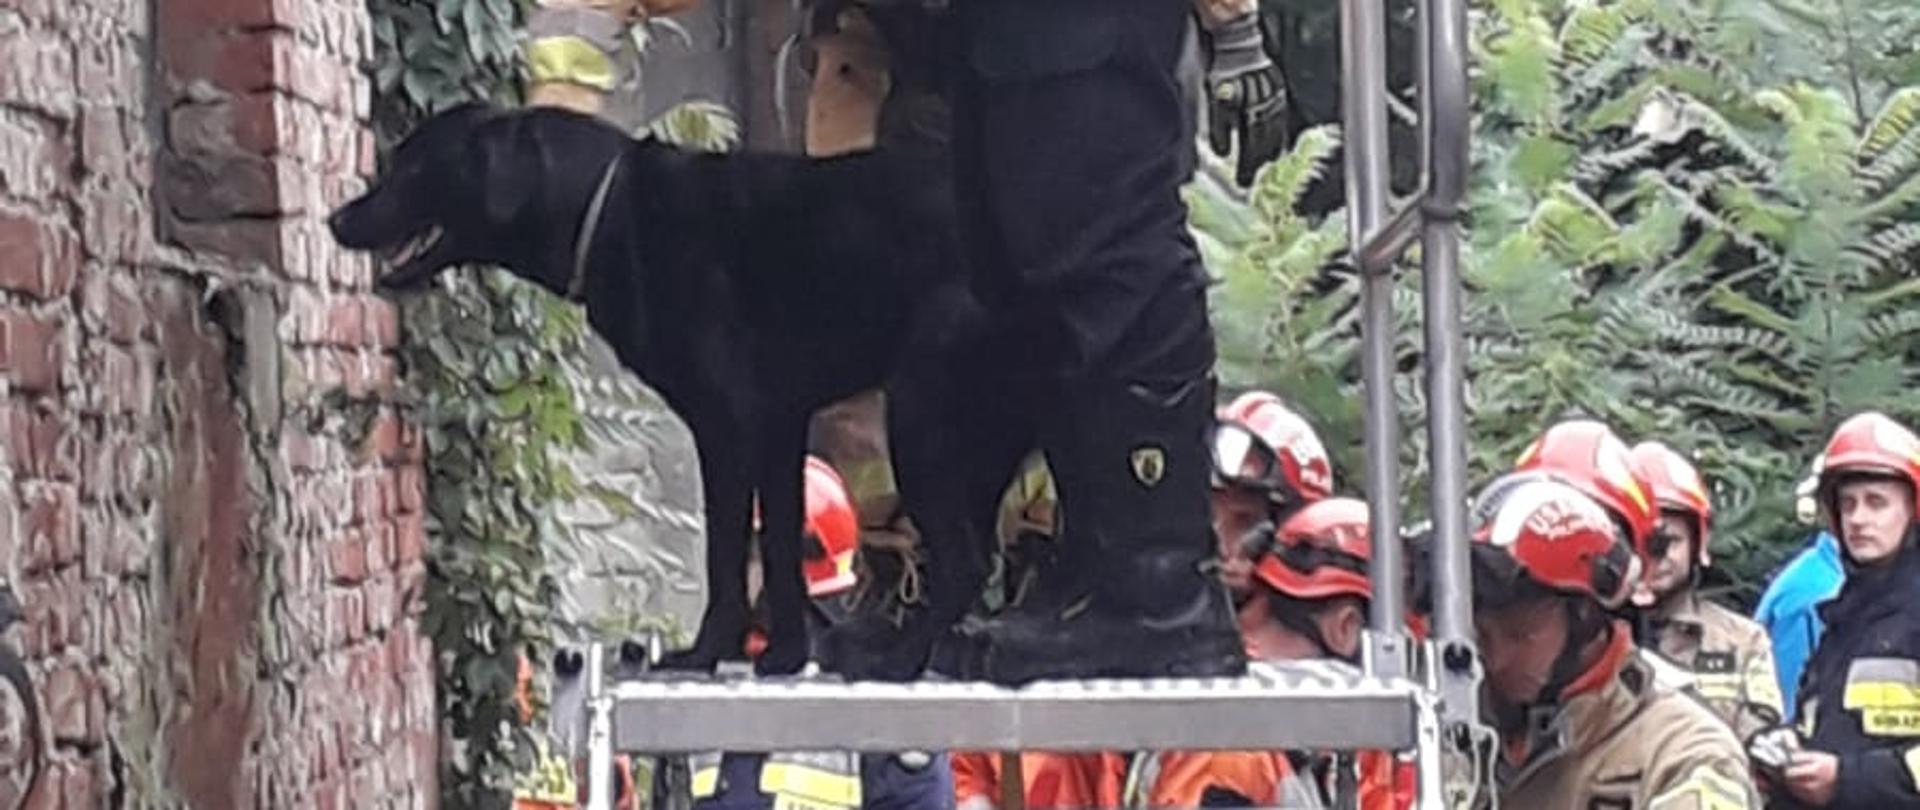 Na zdjęciu widać podest ratowniczy na którym stoi dwóch strażaków tj. mężczyzna i kobieta pomiędzy nimi pies tropiący koloru czarnego przygotowany do wejścia do wewnątrz budynku w celu poszukiwania ewentualnych osób poszkodowanych.